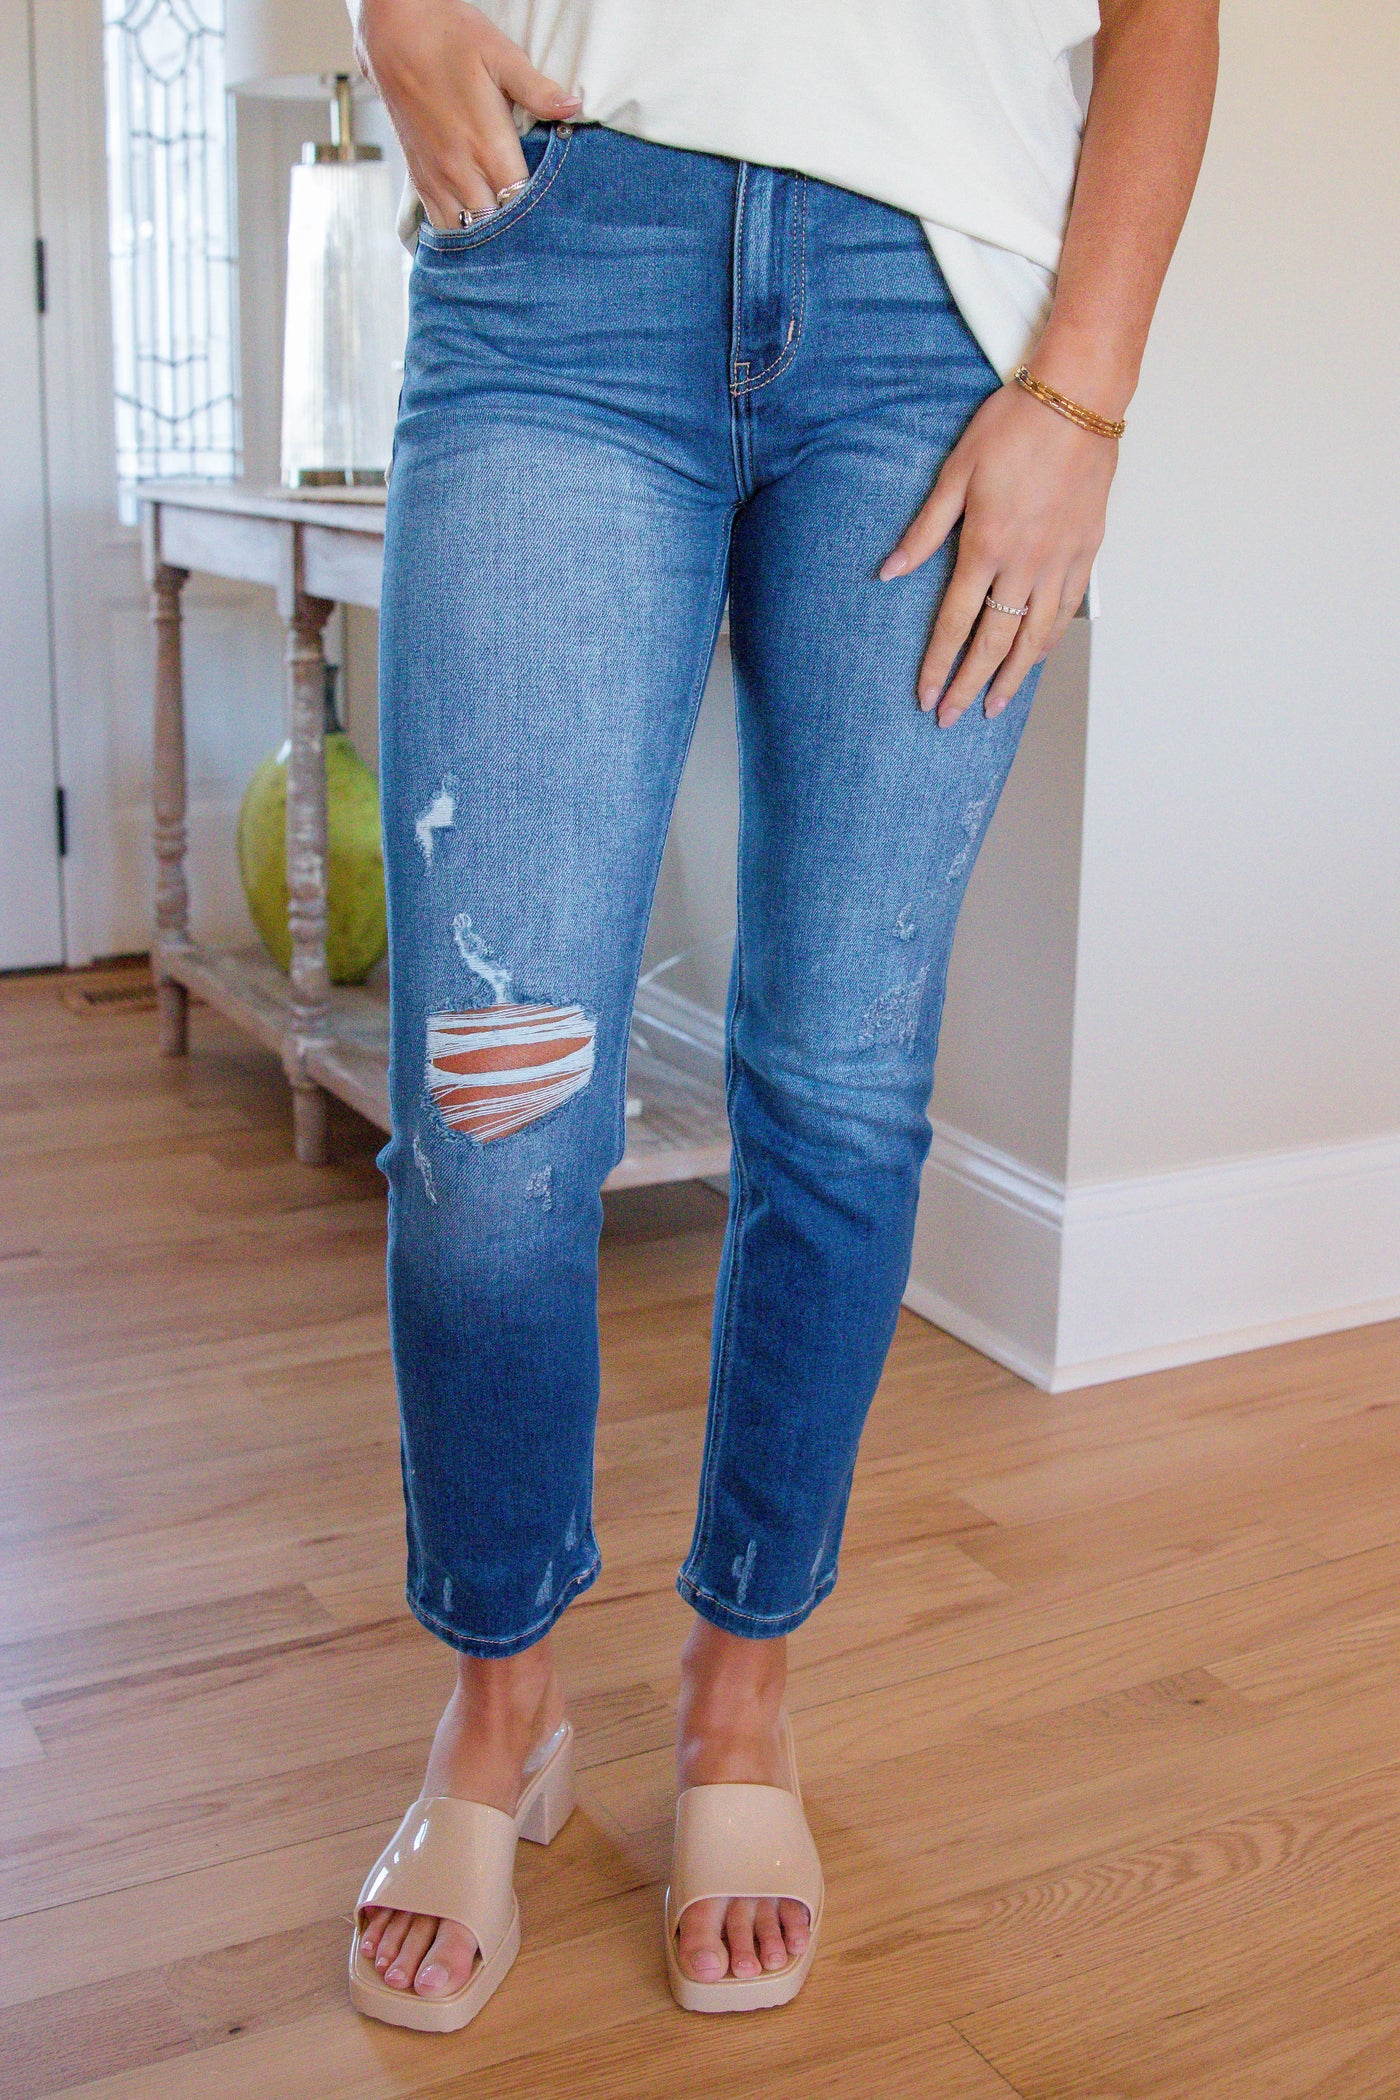 Straight Leg Jeans- Women's Trendy Denim- Spring Jeans For Women- $52